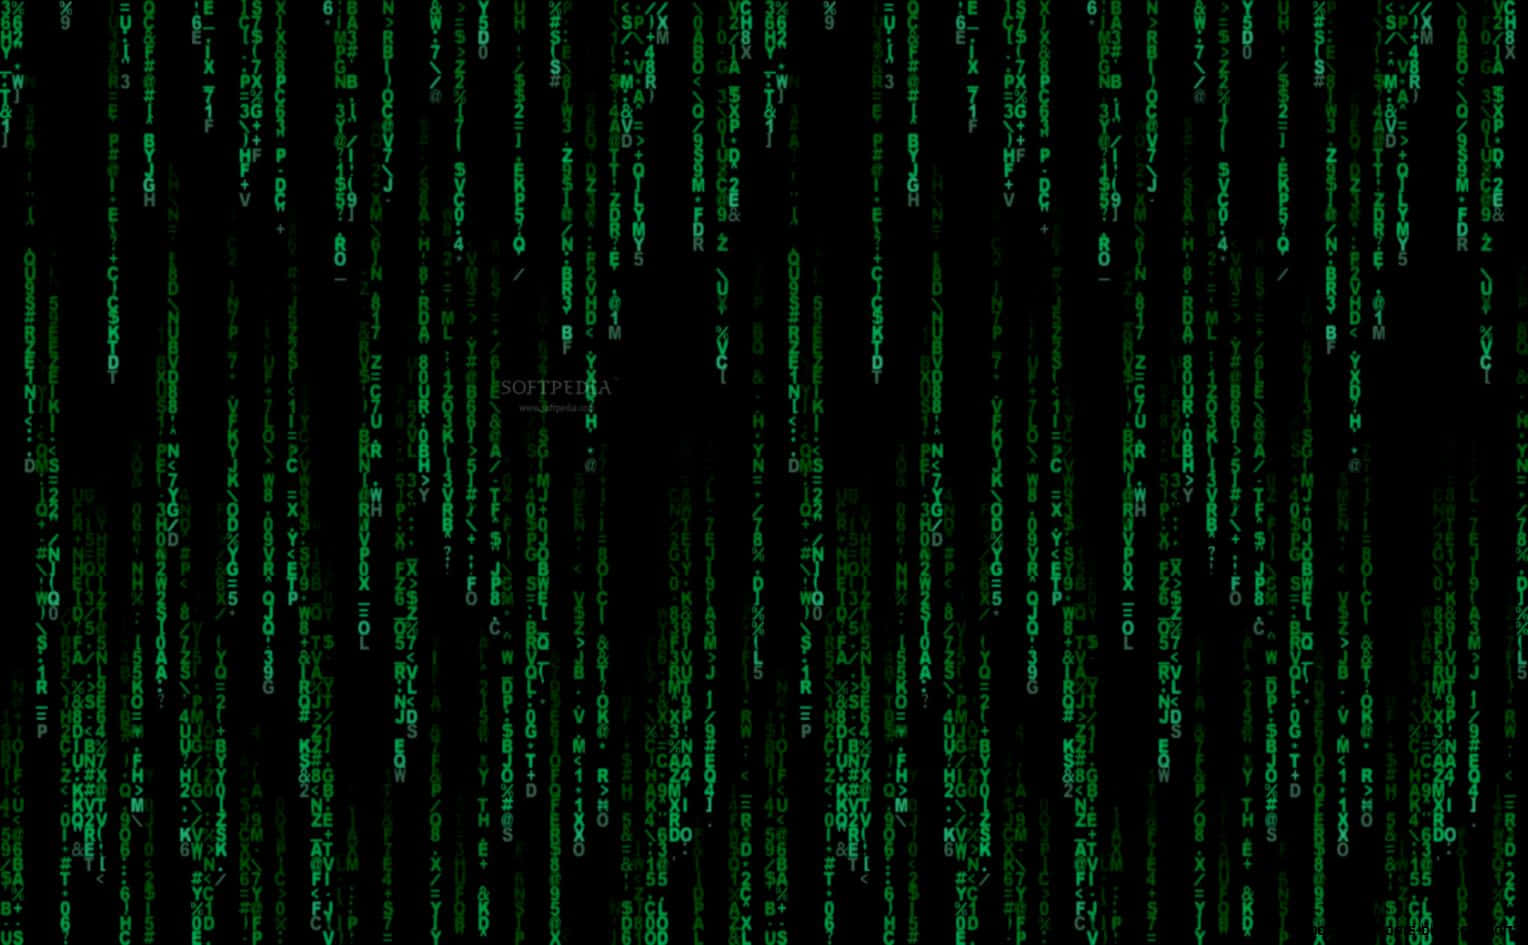 Bildskärmenzooma In På Matrix Tapeten.